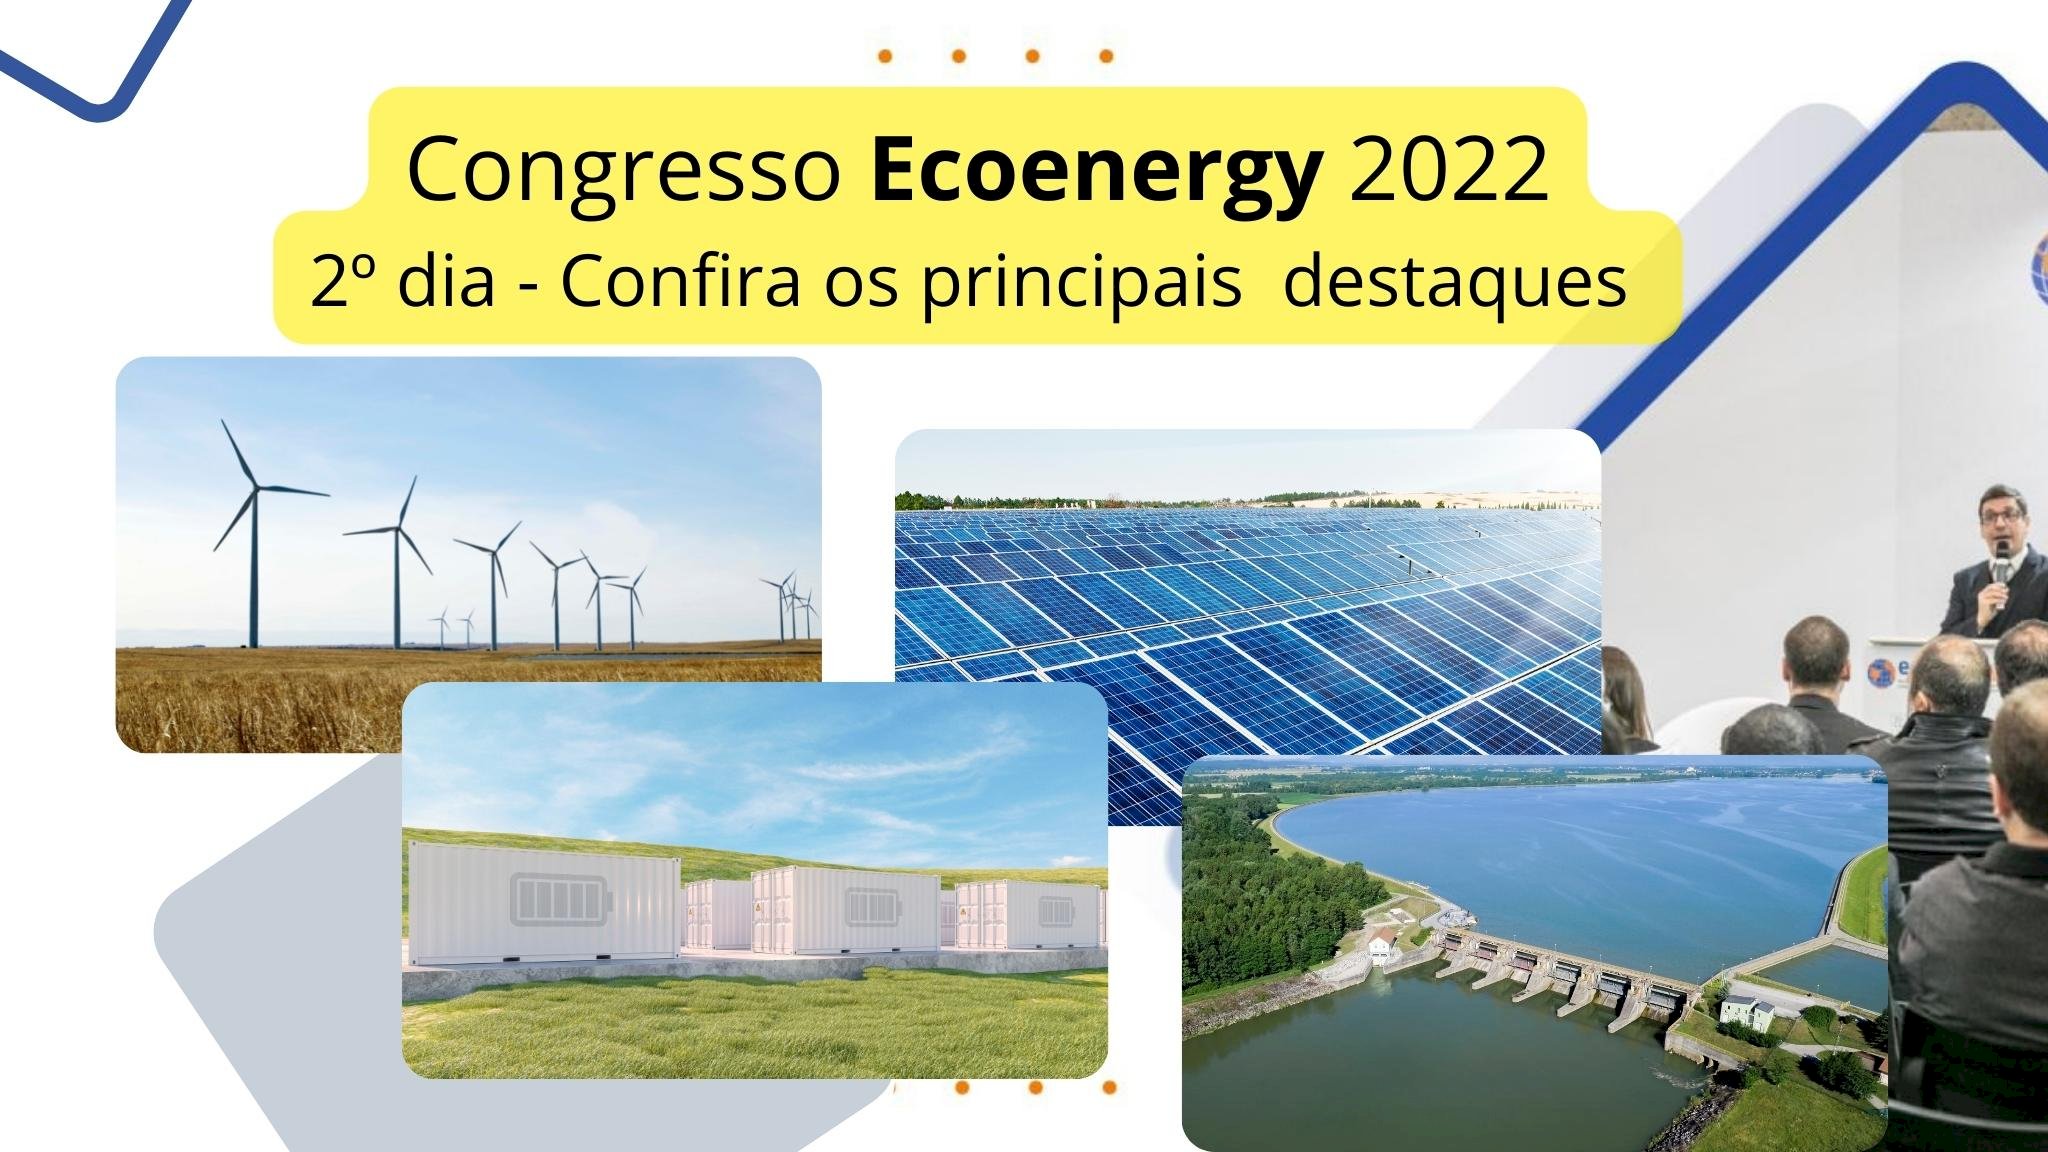 Congresso Ecoenergy - segundo dia destaca fontes de energias renováveis